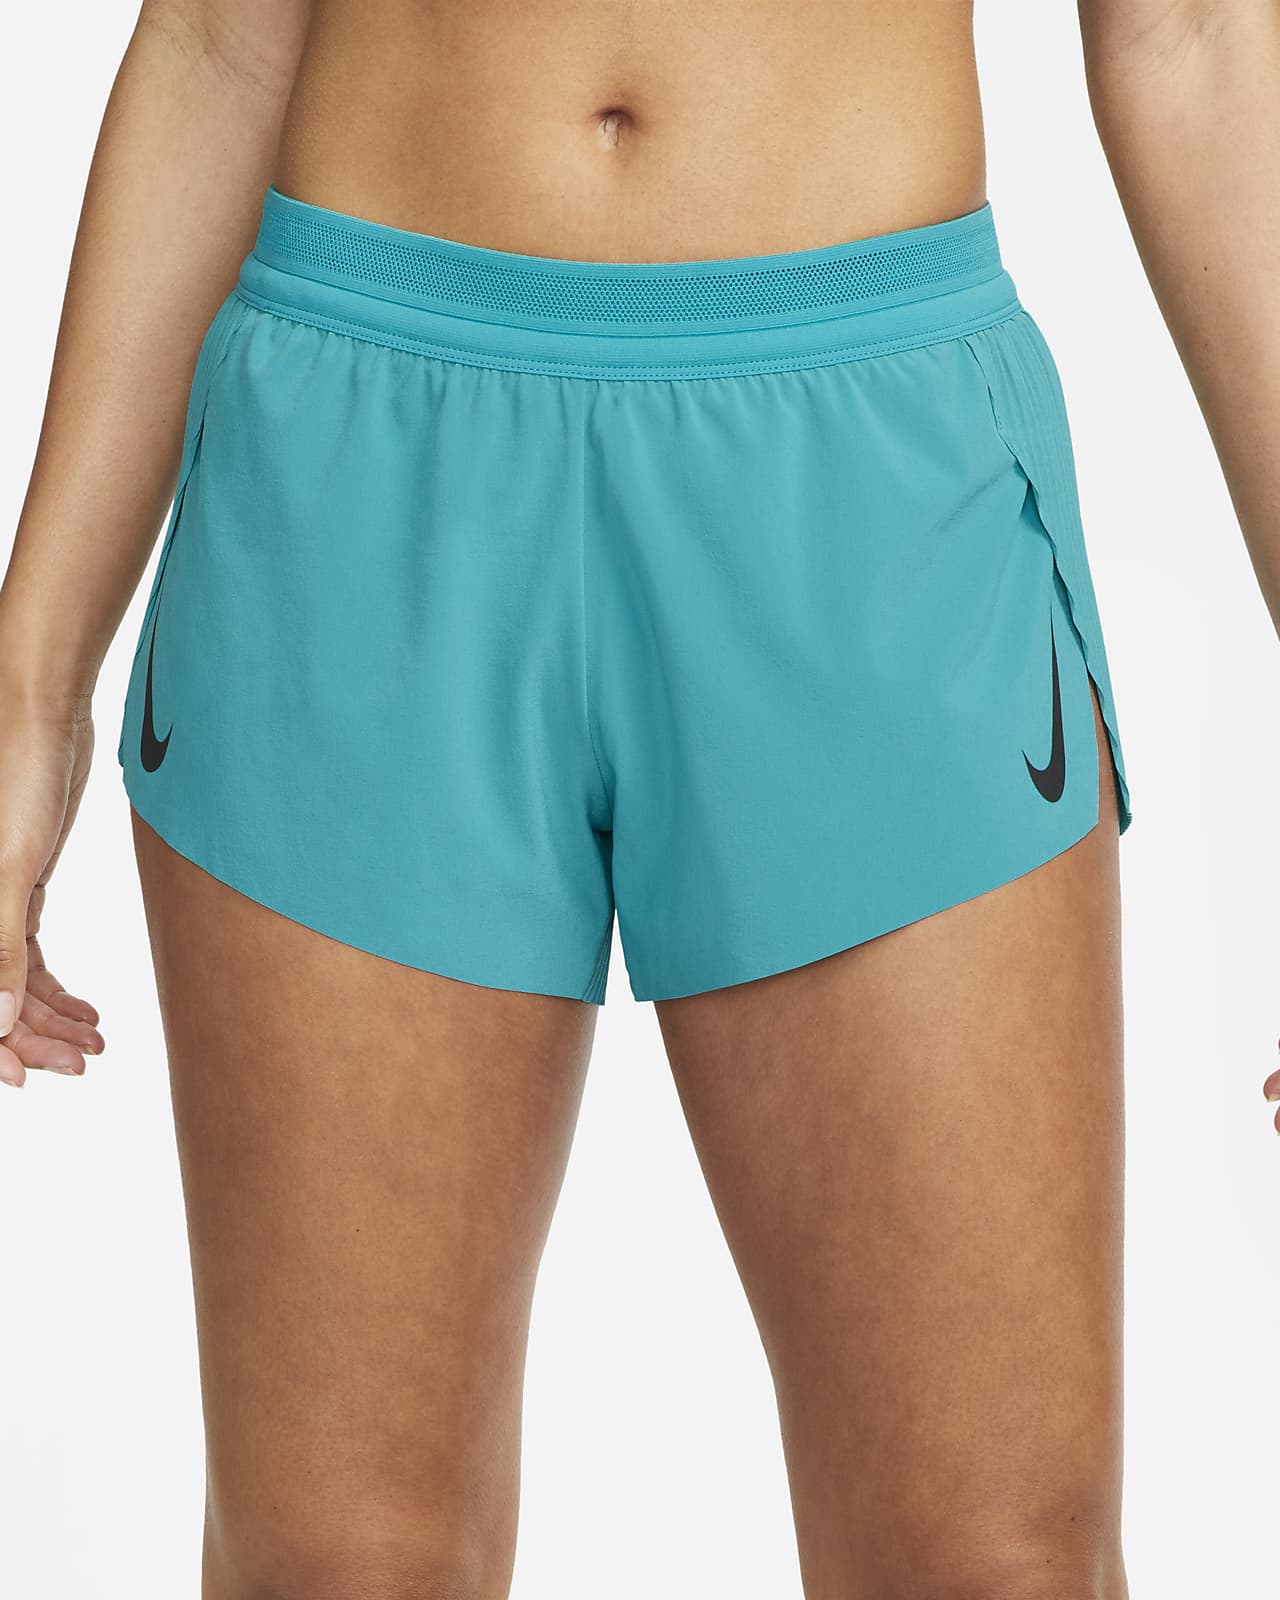 Nike Womens Aeroswift Running Athletic Workout Shorts, Orange, X-Large 